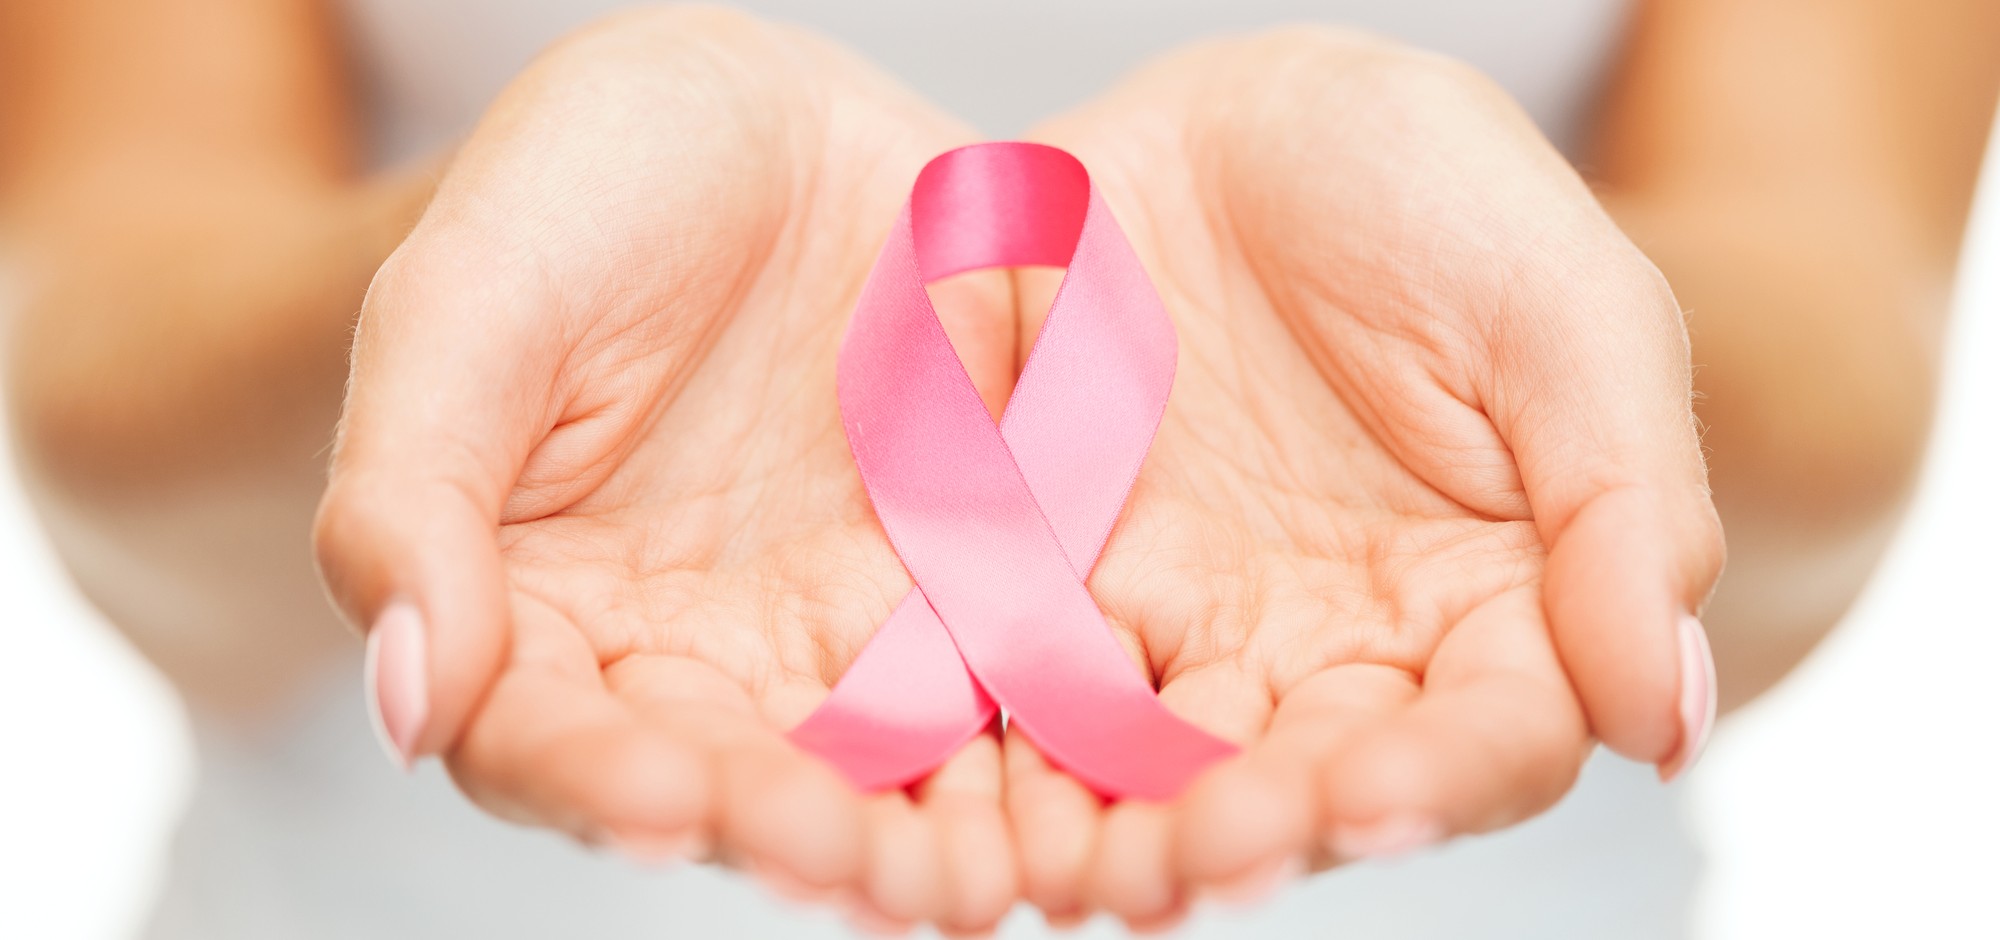 The Truth about Breast Cancer Awareness: เบื้องหลังริบบิ้นสีชมพู การรณรงค์มะเร็งเต้านม